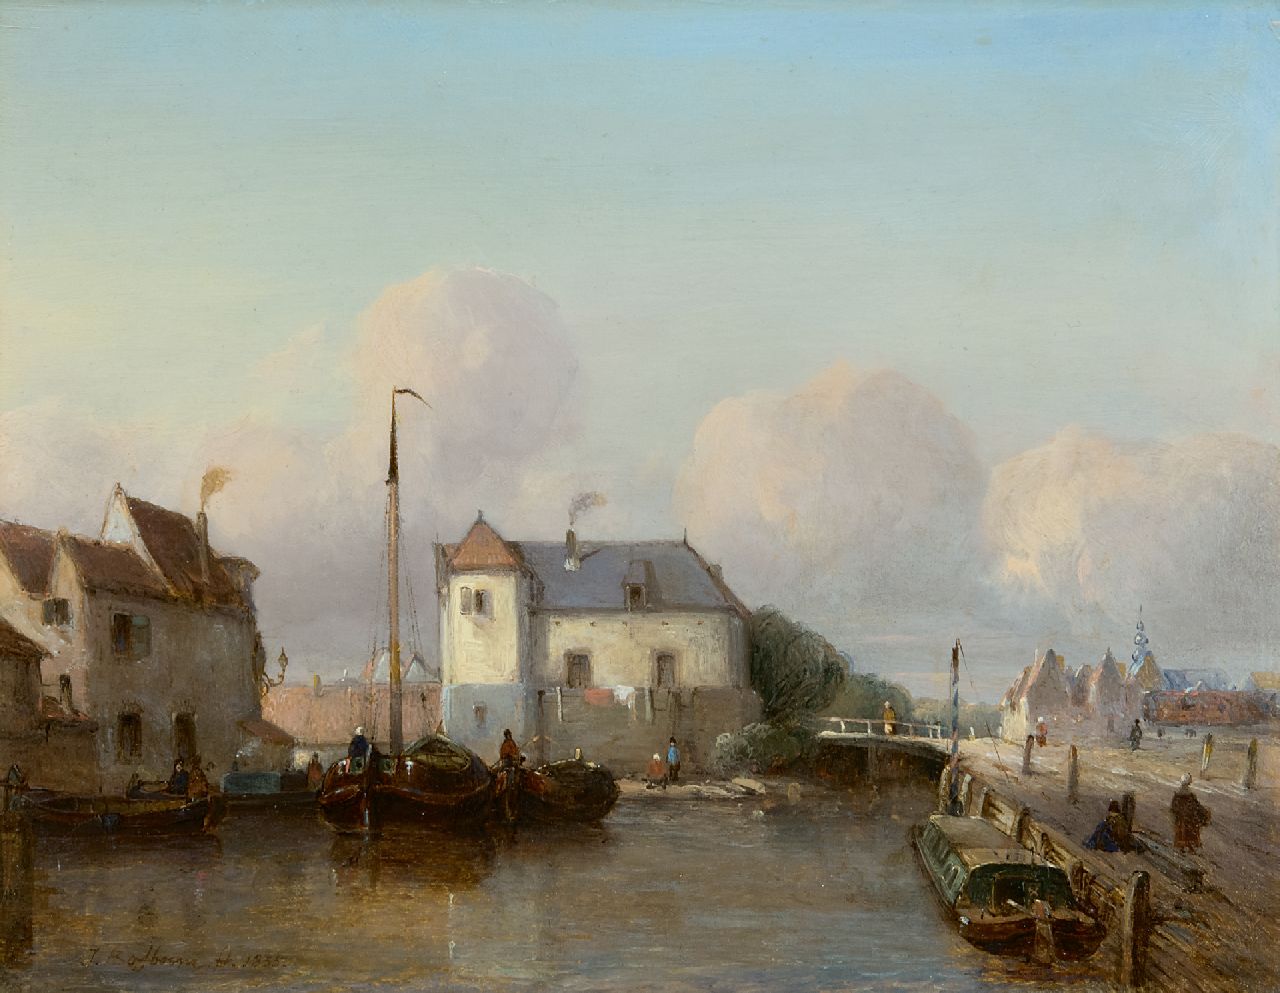 Bosboom J.  | Johannes Bosboom | Schilderijen te koop aangeboden | Hollandse binnenhaven, olieverf op paneel 24,8 x 31,7 cm, gesigneerd linksonder en gedateerd 1835